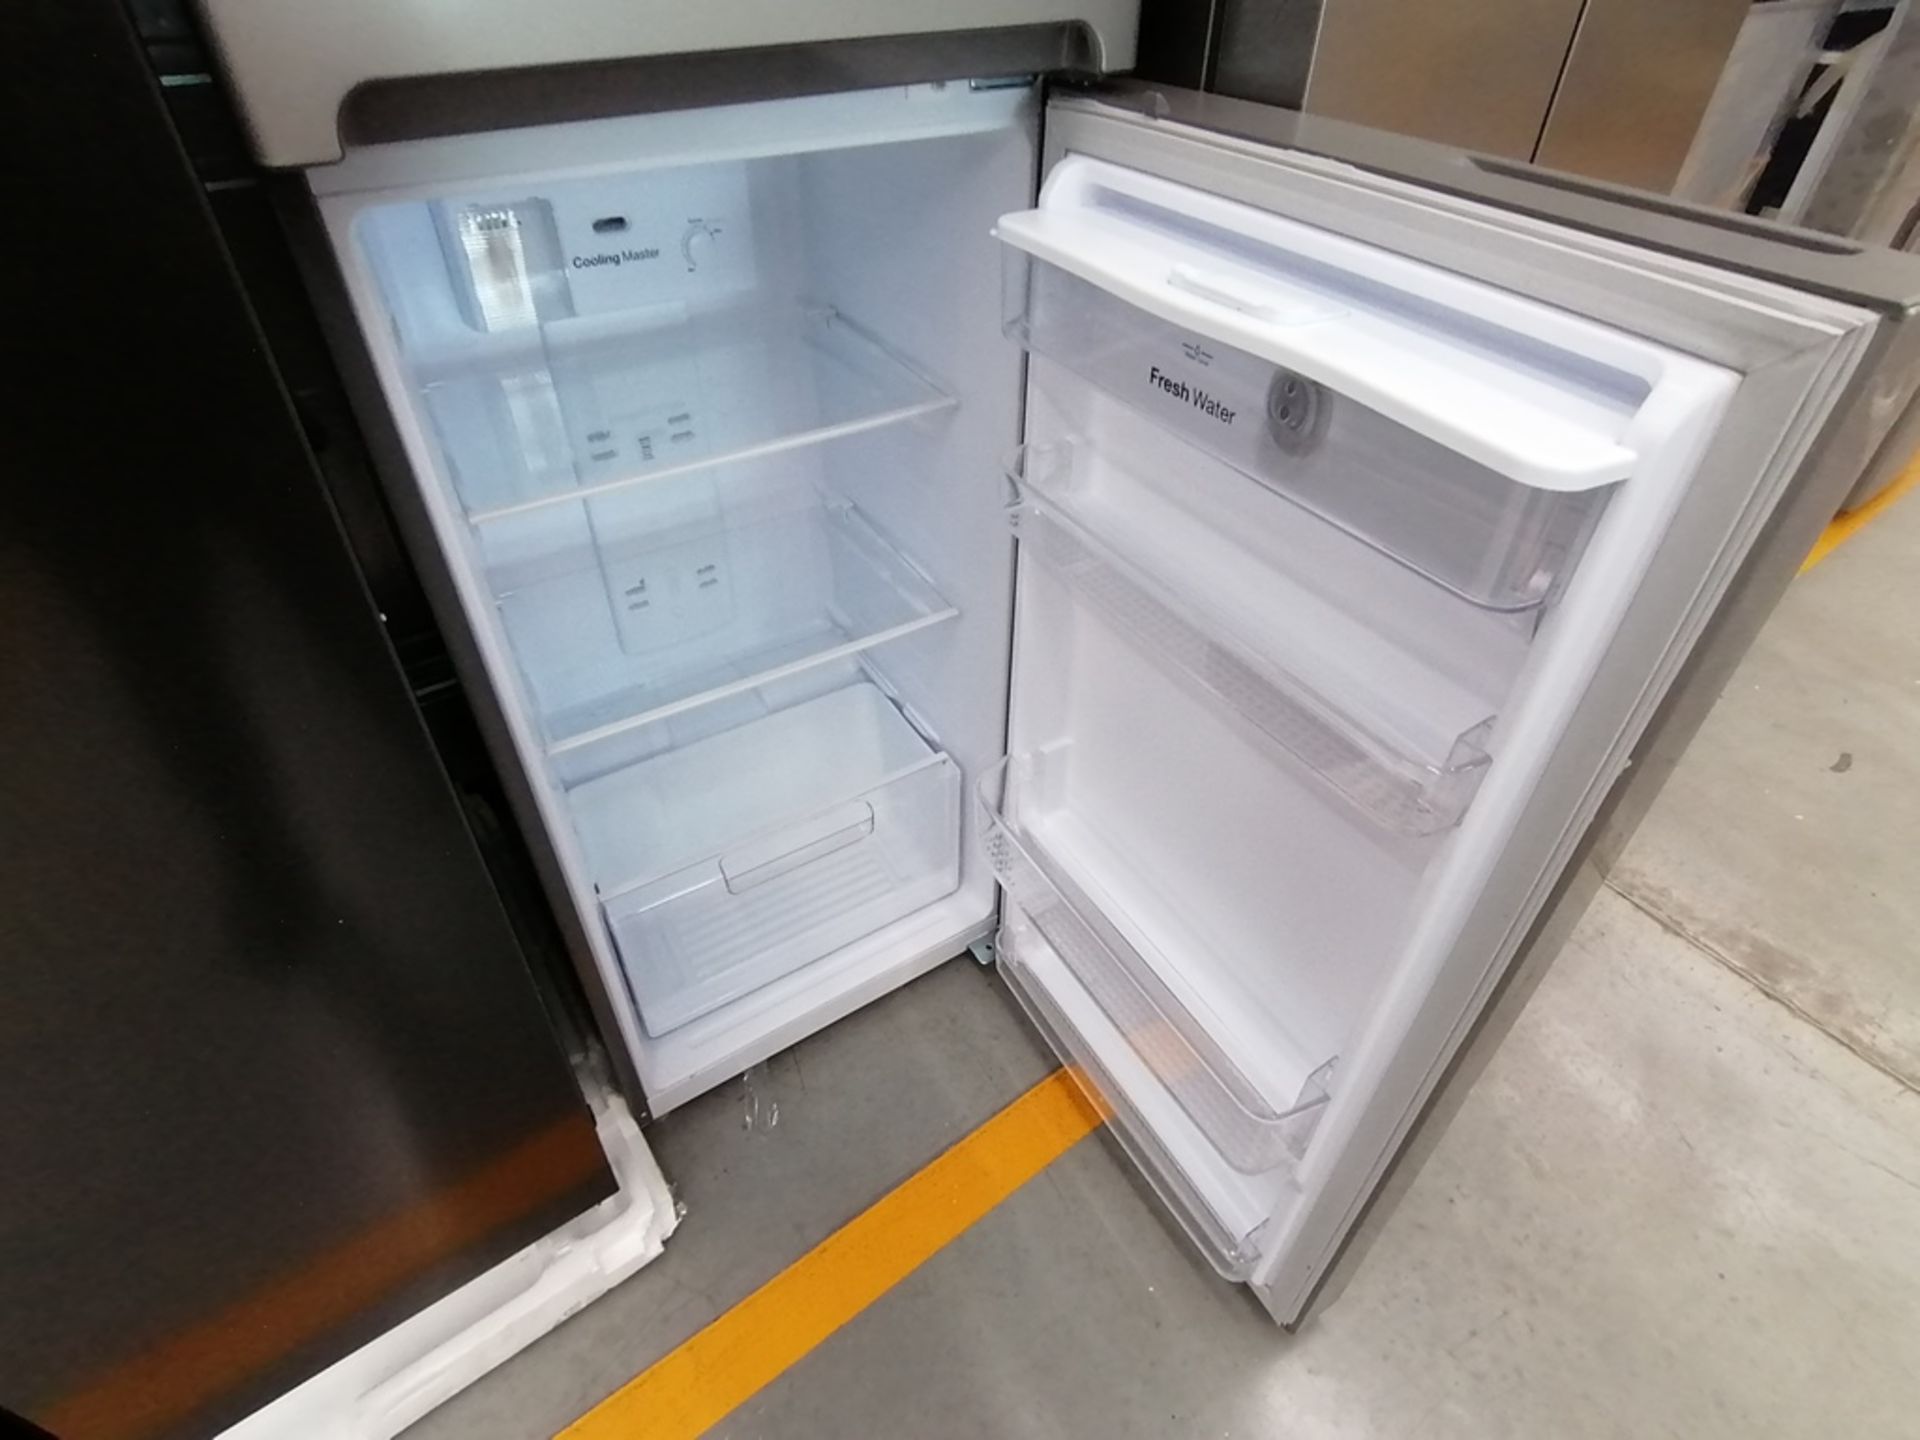 Lote de 2 refrigeradores incluye: 1 Refrigerador, Marca Samsung, Modelo RS28T5B00B1, Serie 0B2V4BAR - Image 12 of 13